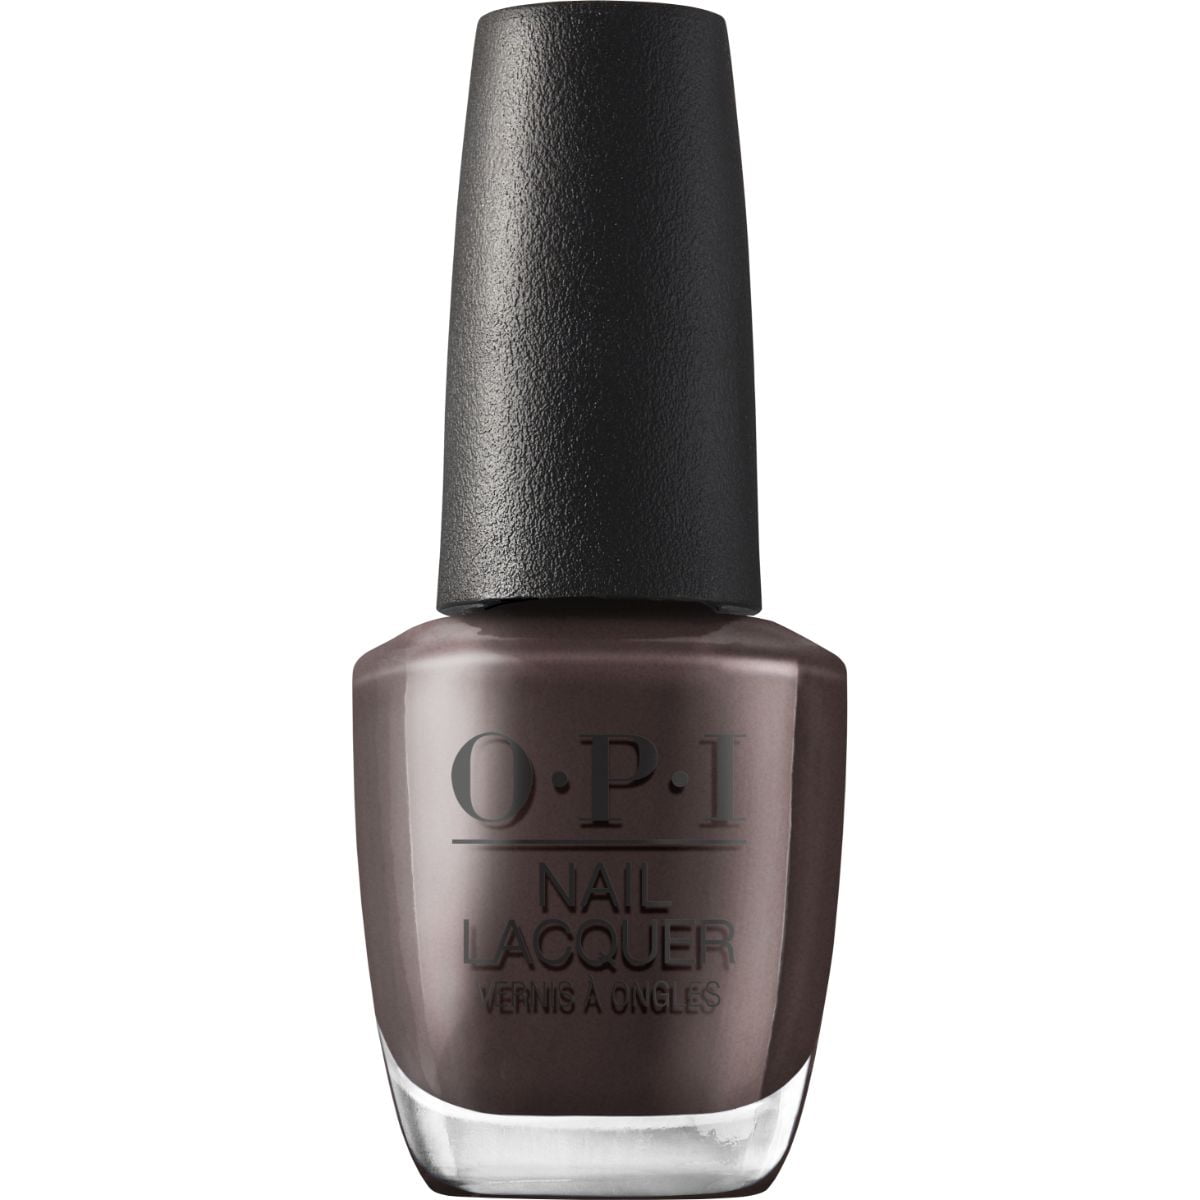 OPI®: Chocolate Moose - Nail Lacquer | Candy Brown Nail Polish